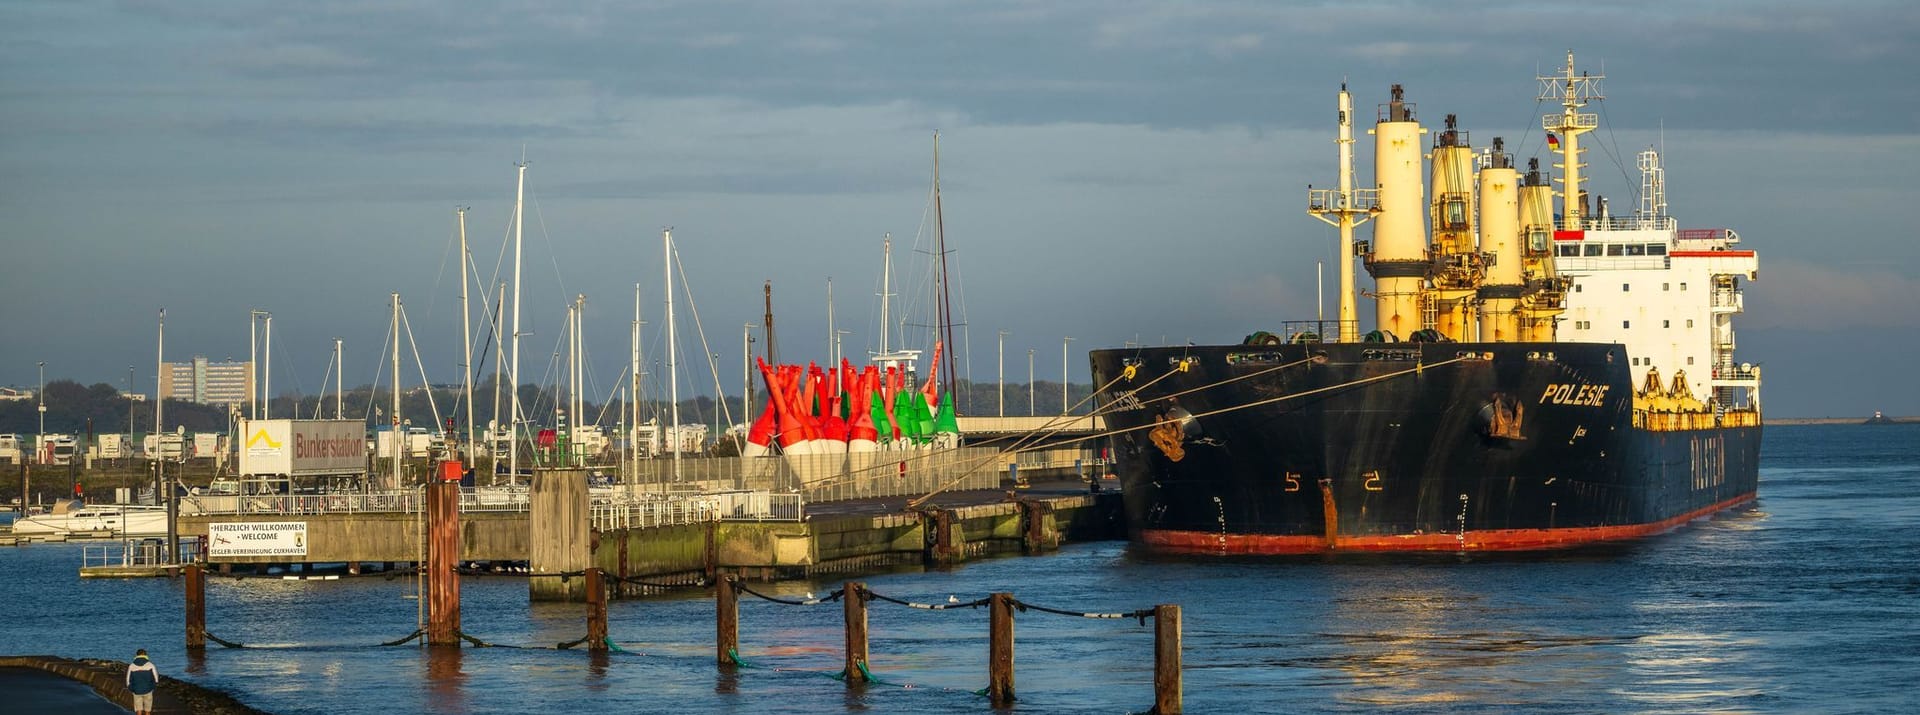 Cuxhaven: Das Frachtschiff "Polesie" liegt im Hafen. Infolge eines Unfalls mit dem Frachter "Verity" am Dienstagmorgen wurde die Rettungsaktion mittlerweile eingestellt.